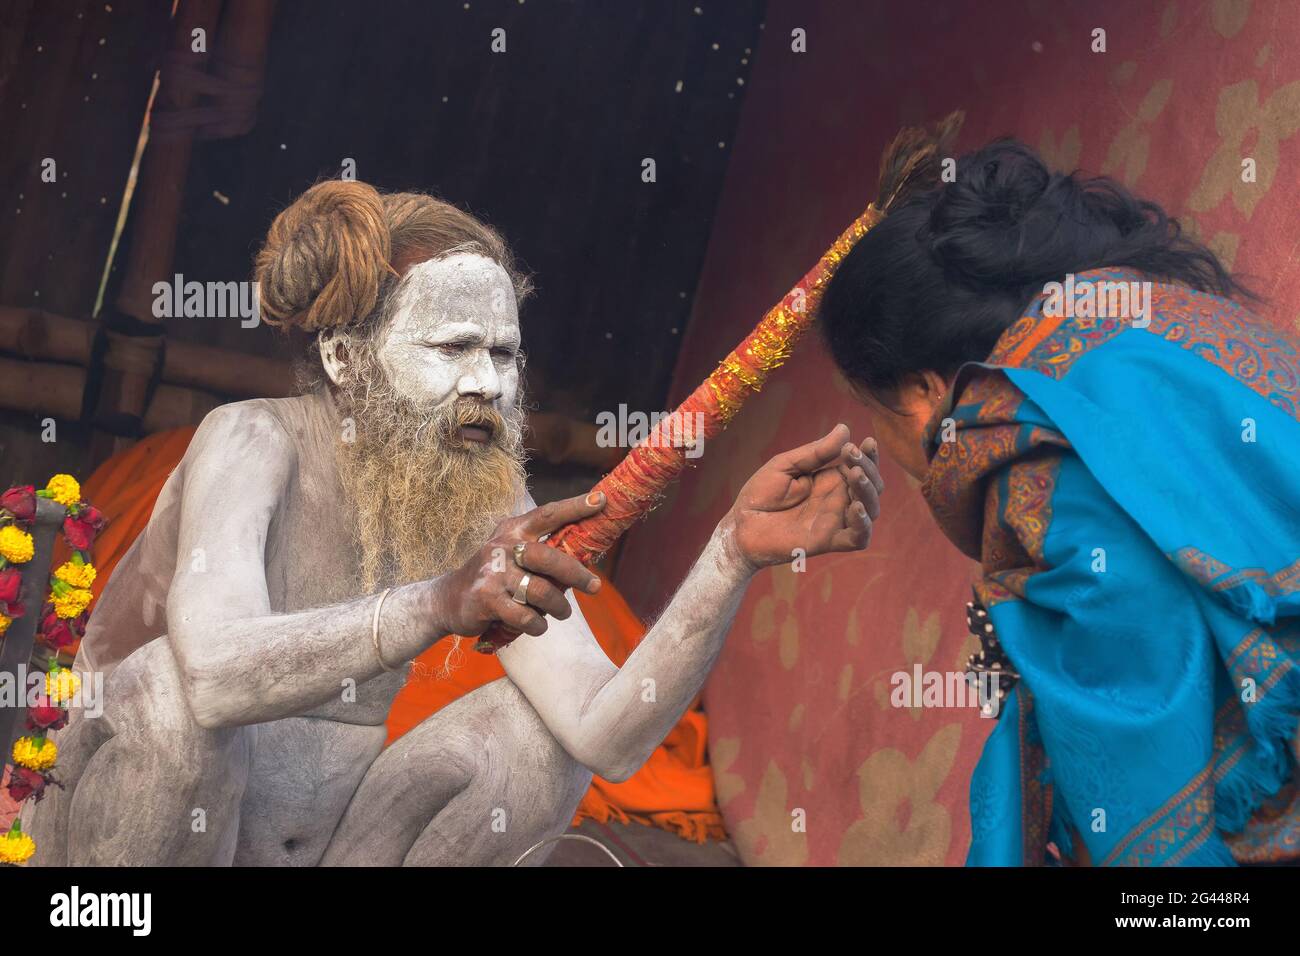 BABUGHAT, KALKUTTA, WESTBENGALEN / INDIEN - 11. JANUAR 2015 : Hindu-Sadhu mit weißer Asche auf Körper und Gesicht, die einen blauen, mit Sari bekleideten indischen Devoten segnet Stockfoto